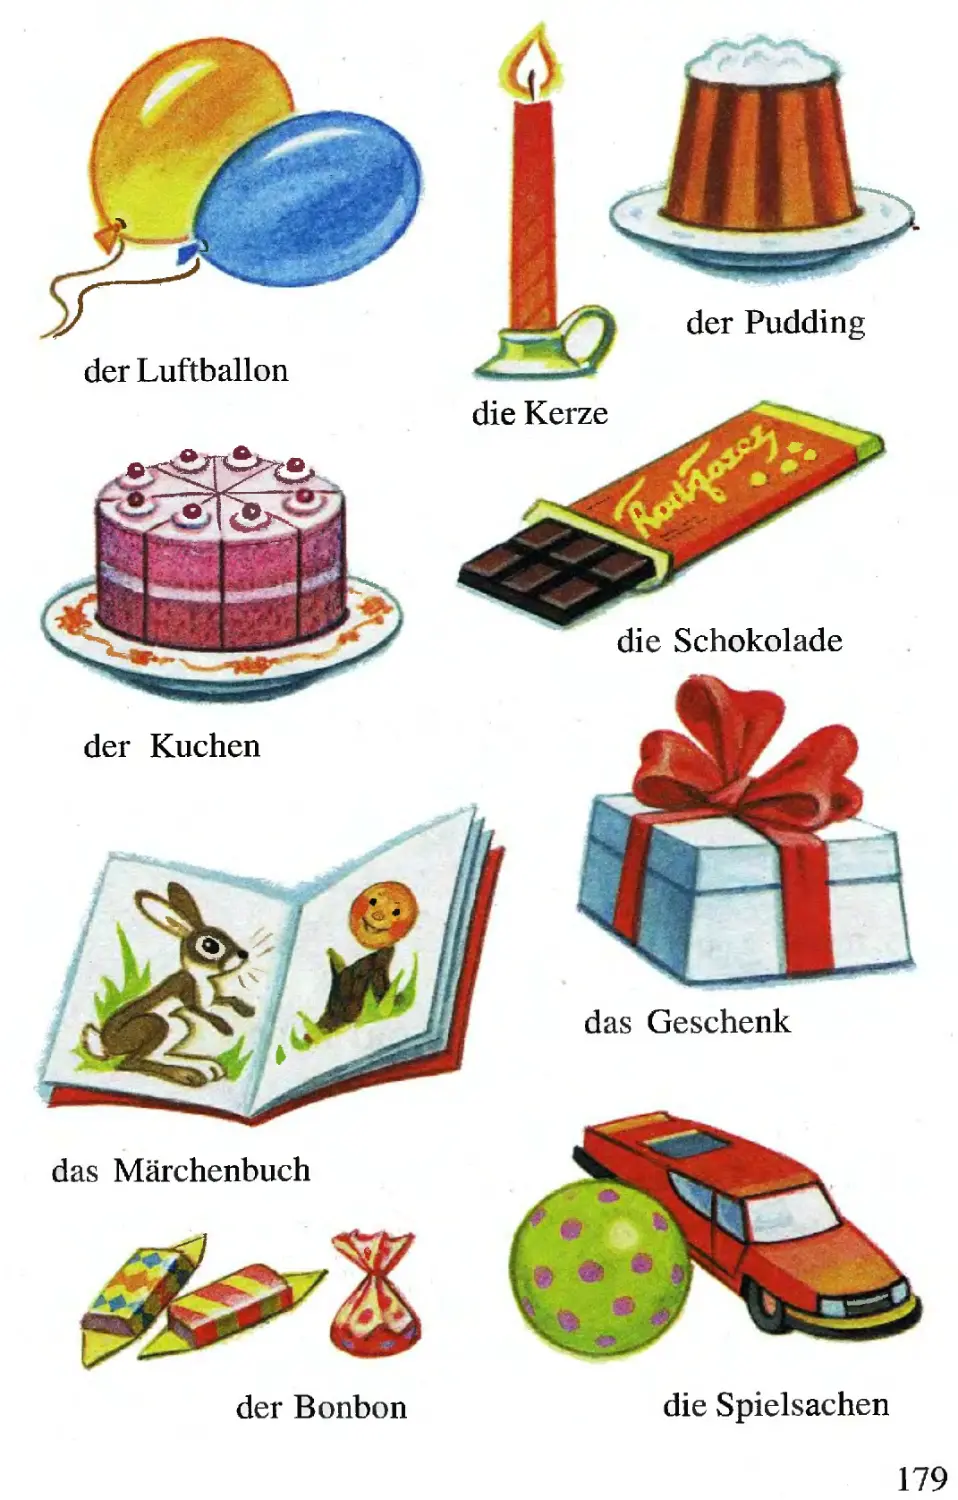 Сувениры на немецком языке